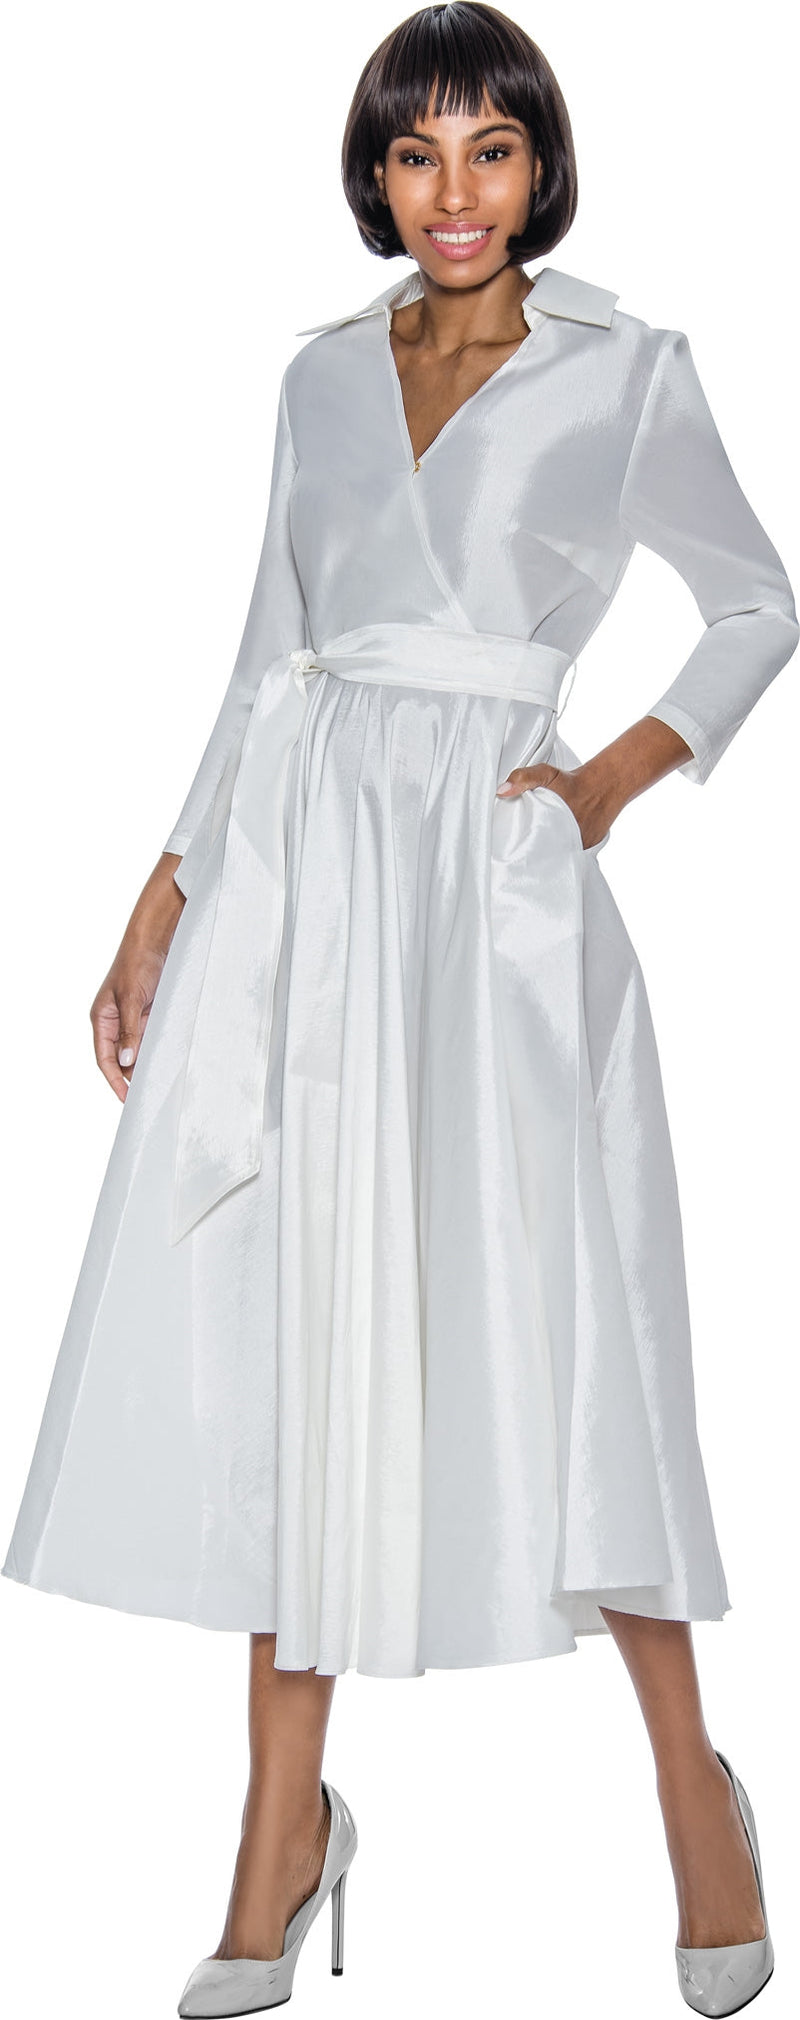 Terramina Church Dress 7869-Off-White - Church Suits For Less